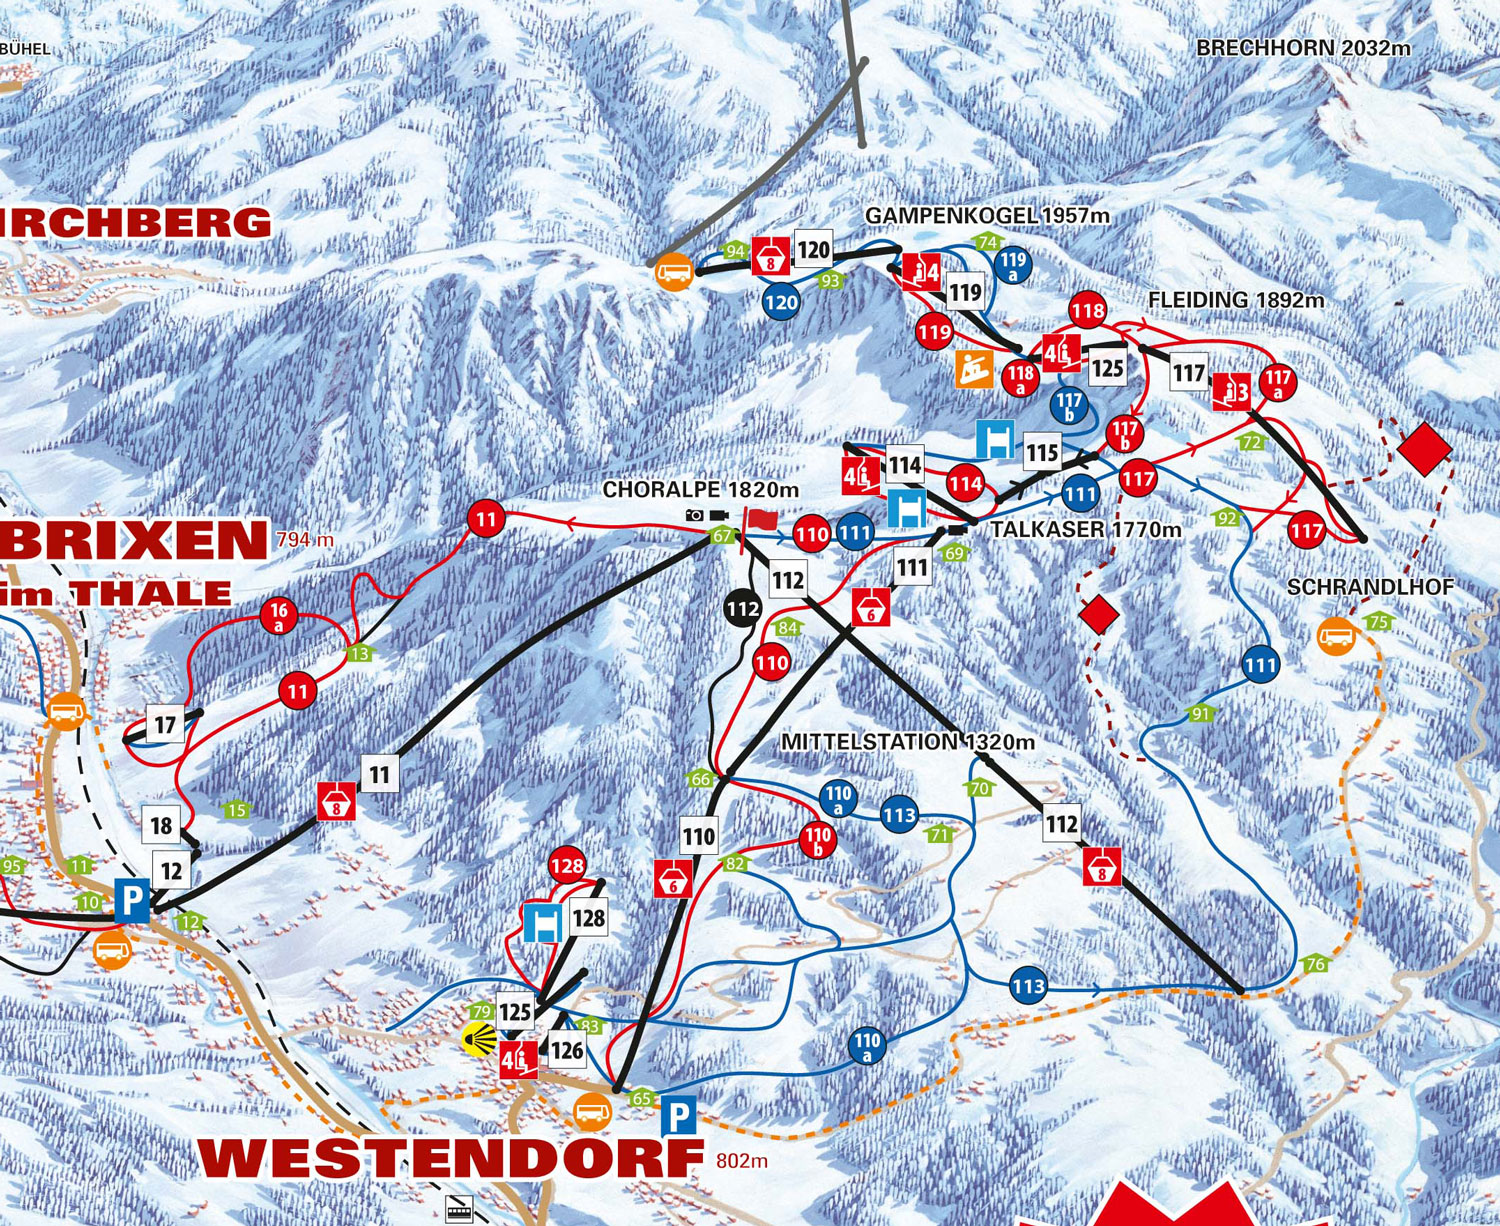 Pistenplan Skiwelt im Skigebiet Söll - ein Skigebiet in Tirol